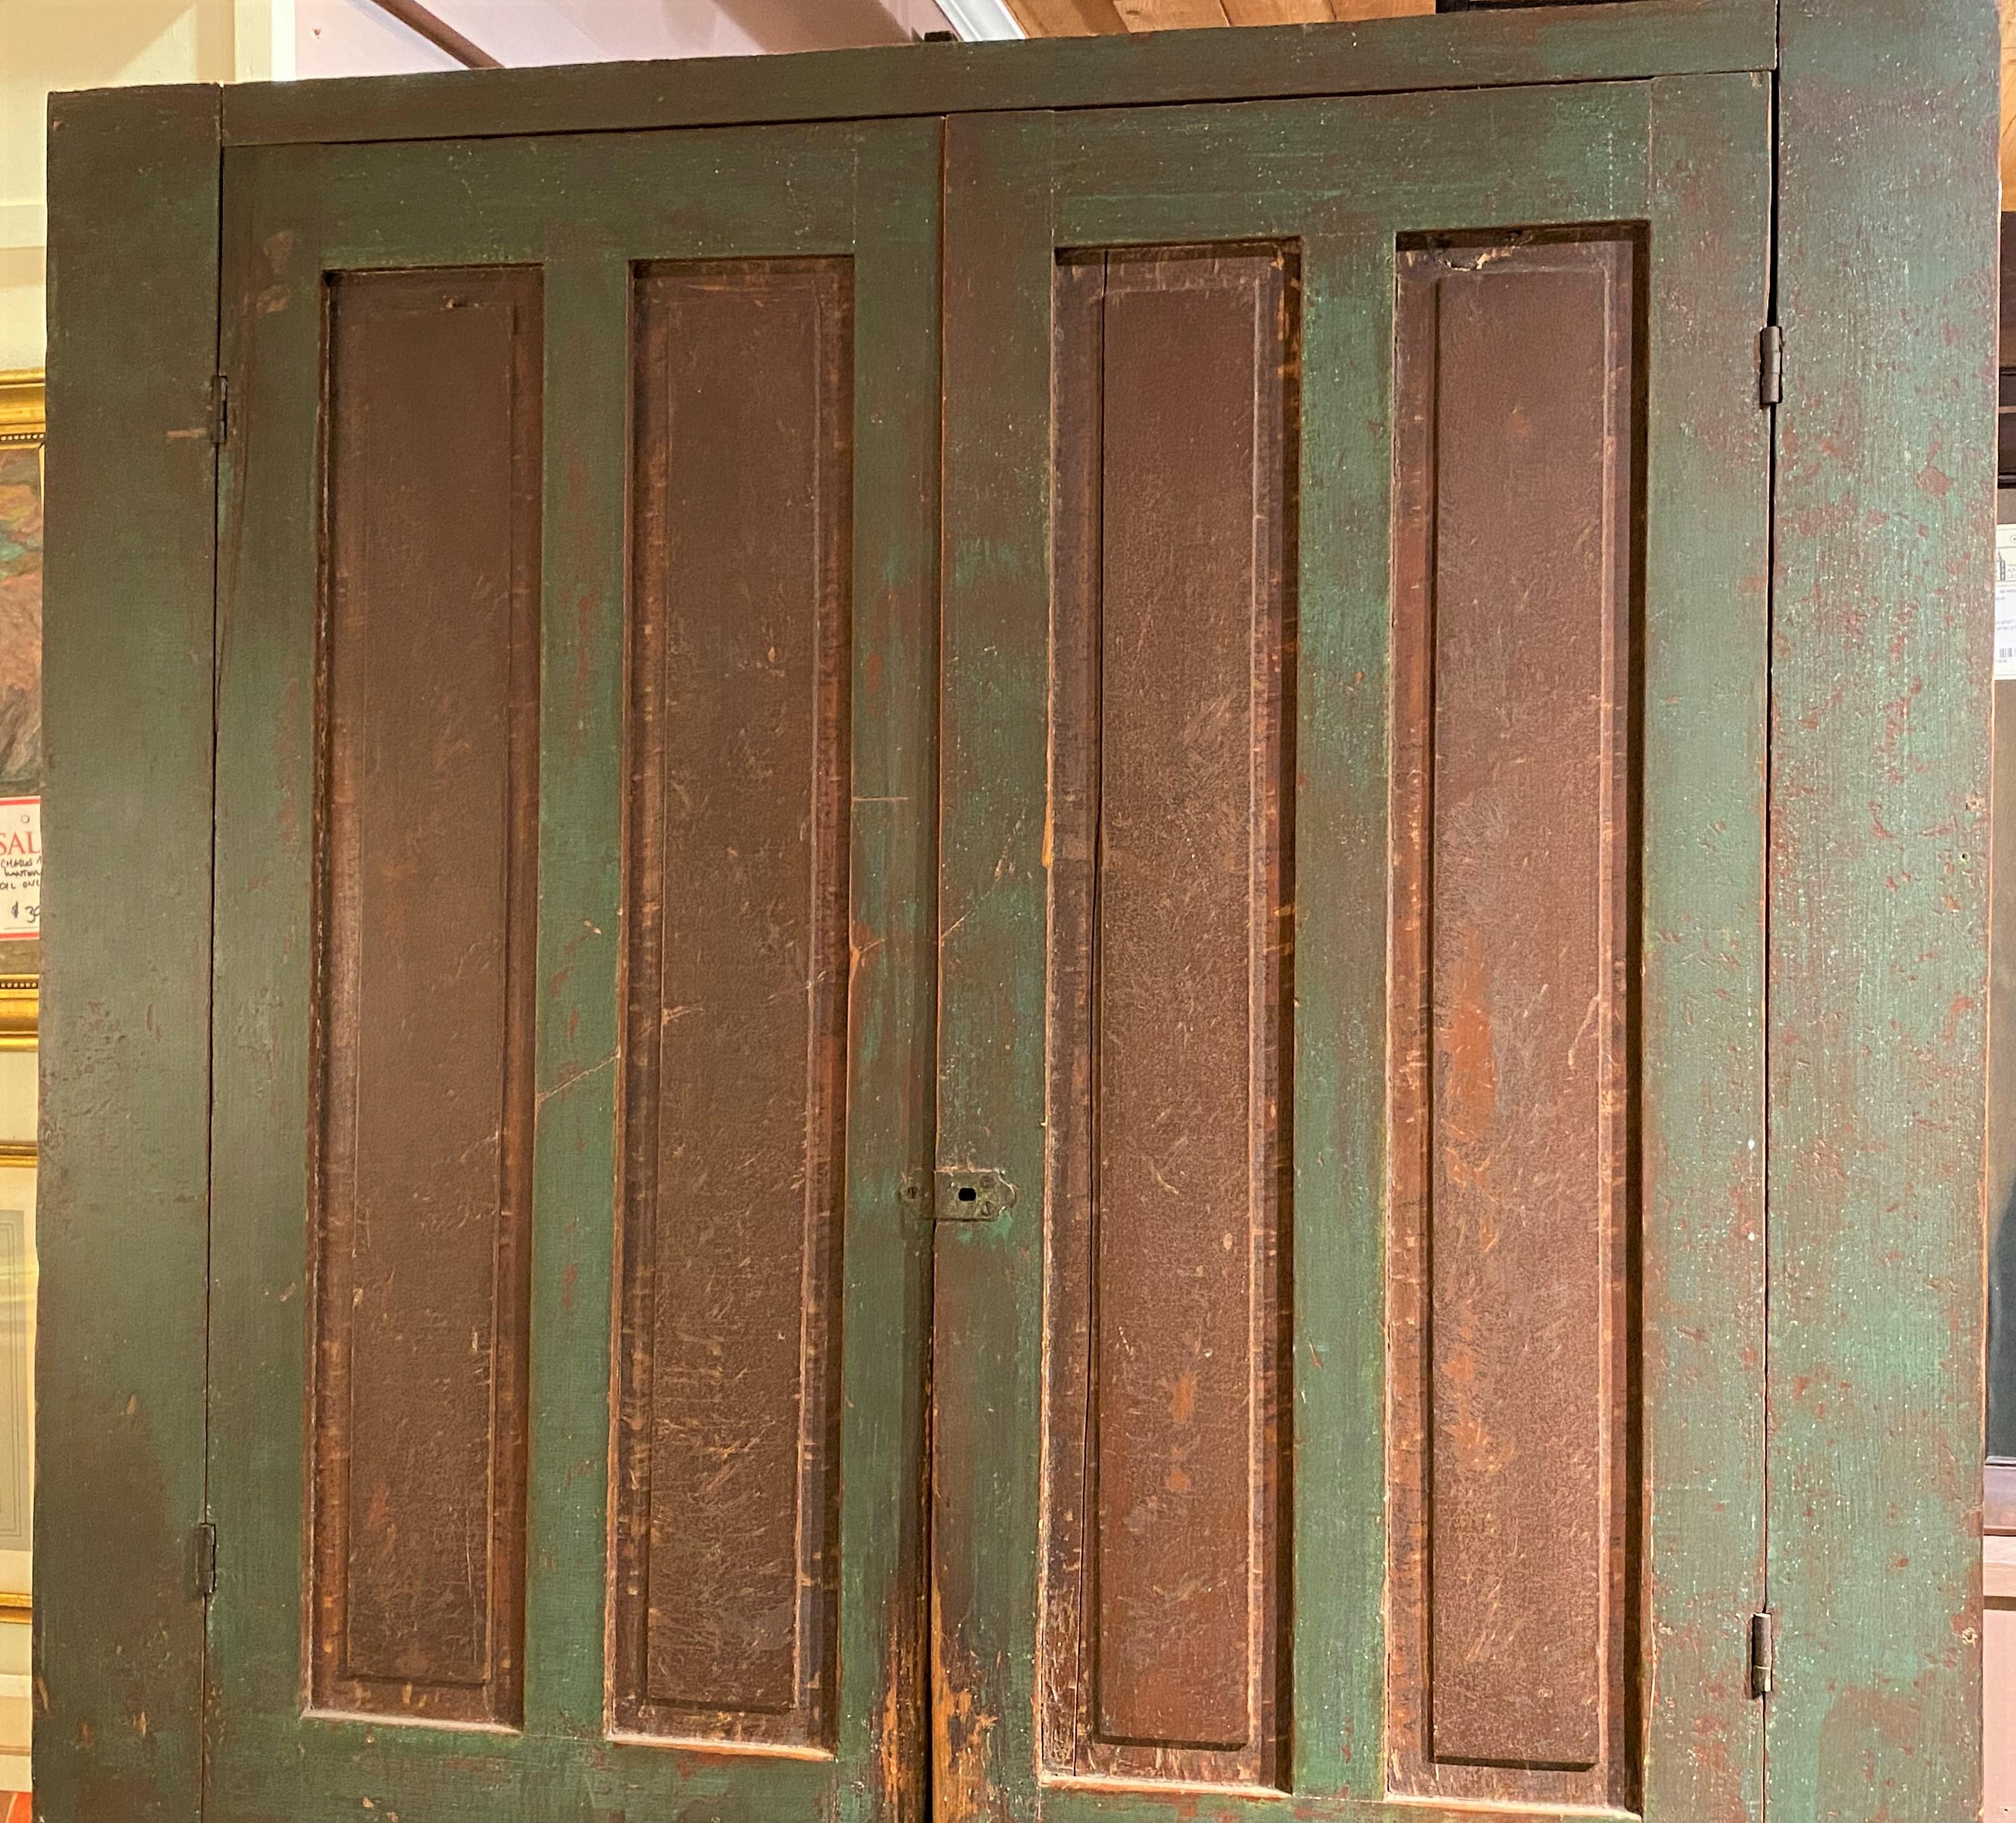 Une magnifique grande armoire à quatre portes en pin de Nouvelle-Angleterre avec des panneaux doubles sur chaque porte, s'ouvrant sur quatre étagères intérieures, en vieille peinture verte avec des rehauts de panneaux brun rougeâtre et une jupe